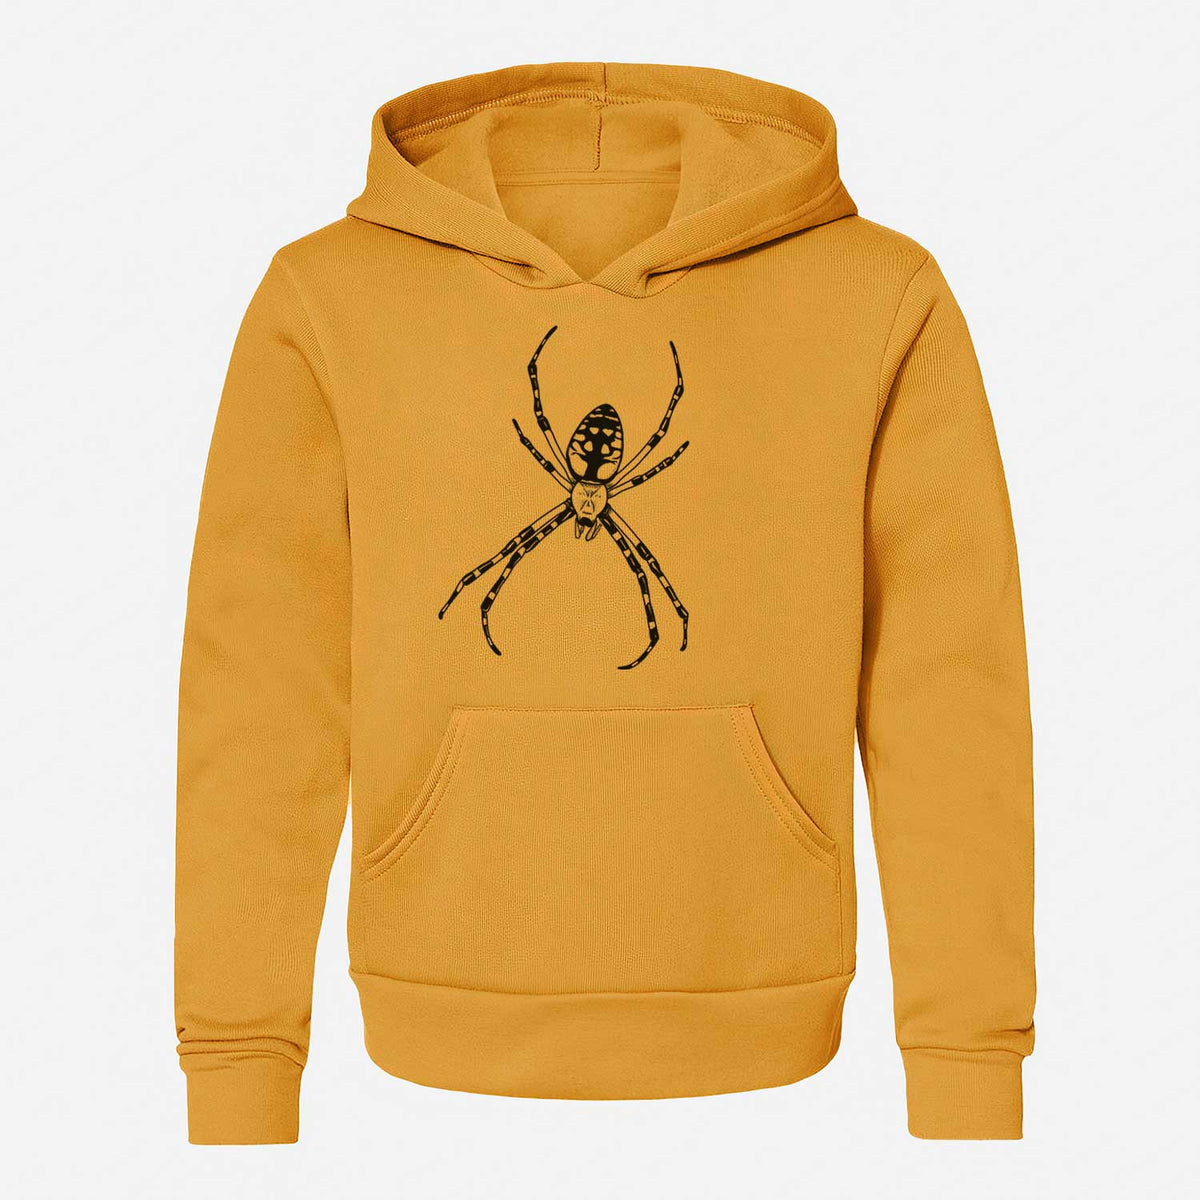 Argiope aurantia - Yellow Garden Spider - Youth Hoodie Sweatshirt